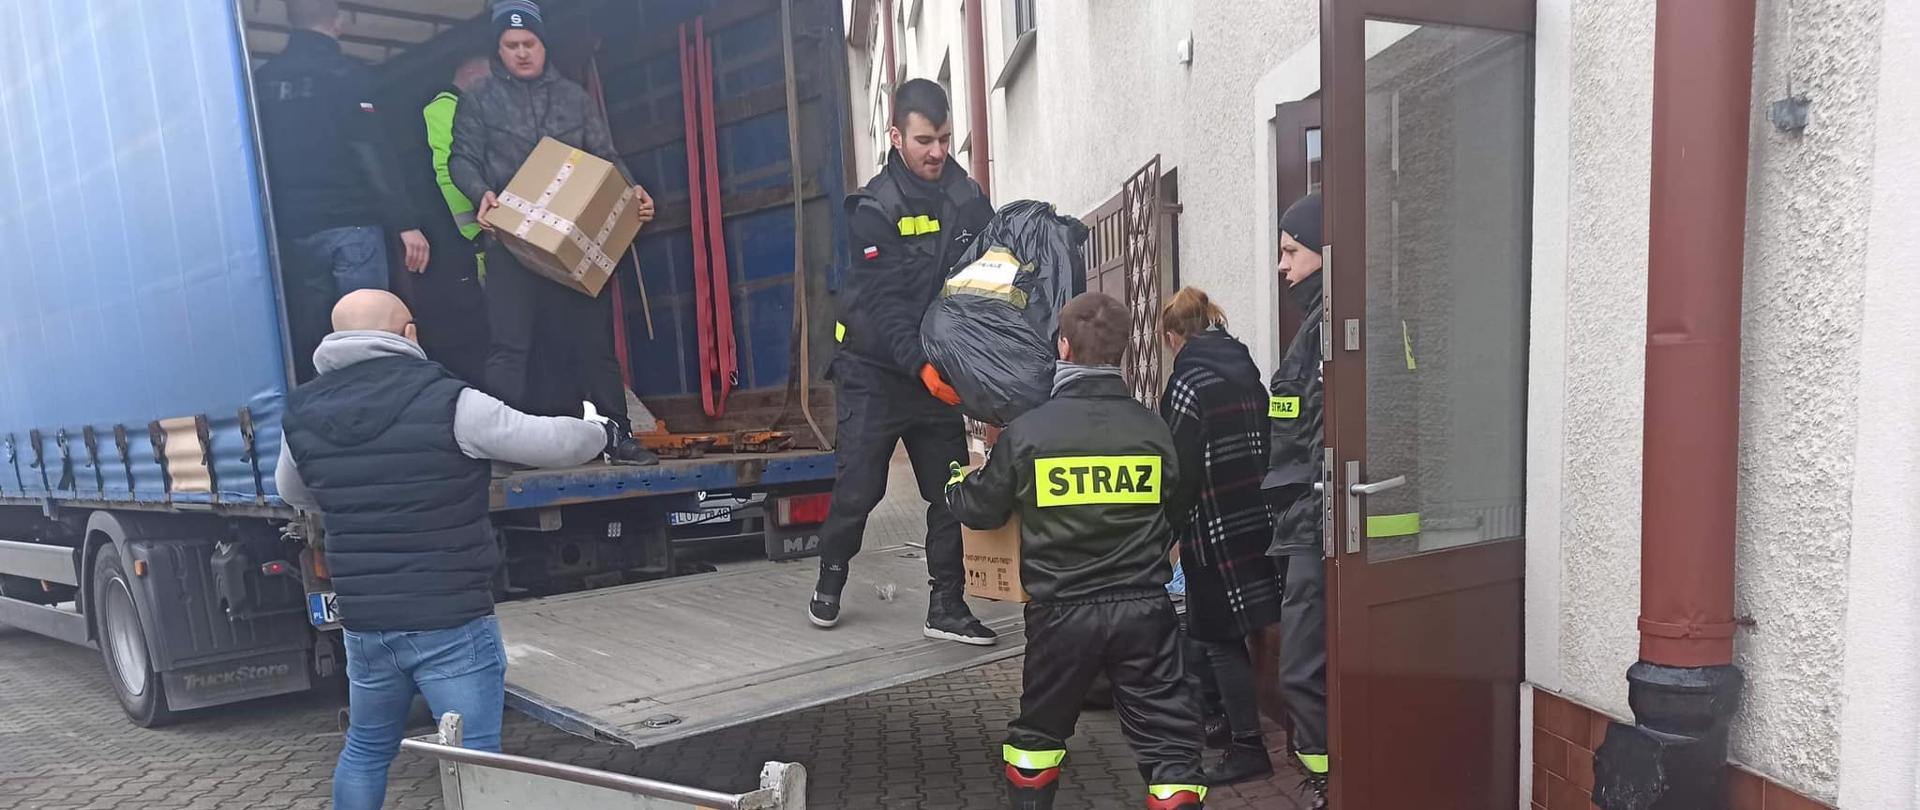 Strażacy przenoszą materiały w ramach pomocy dla uchodźców z Ukrainy